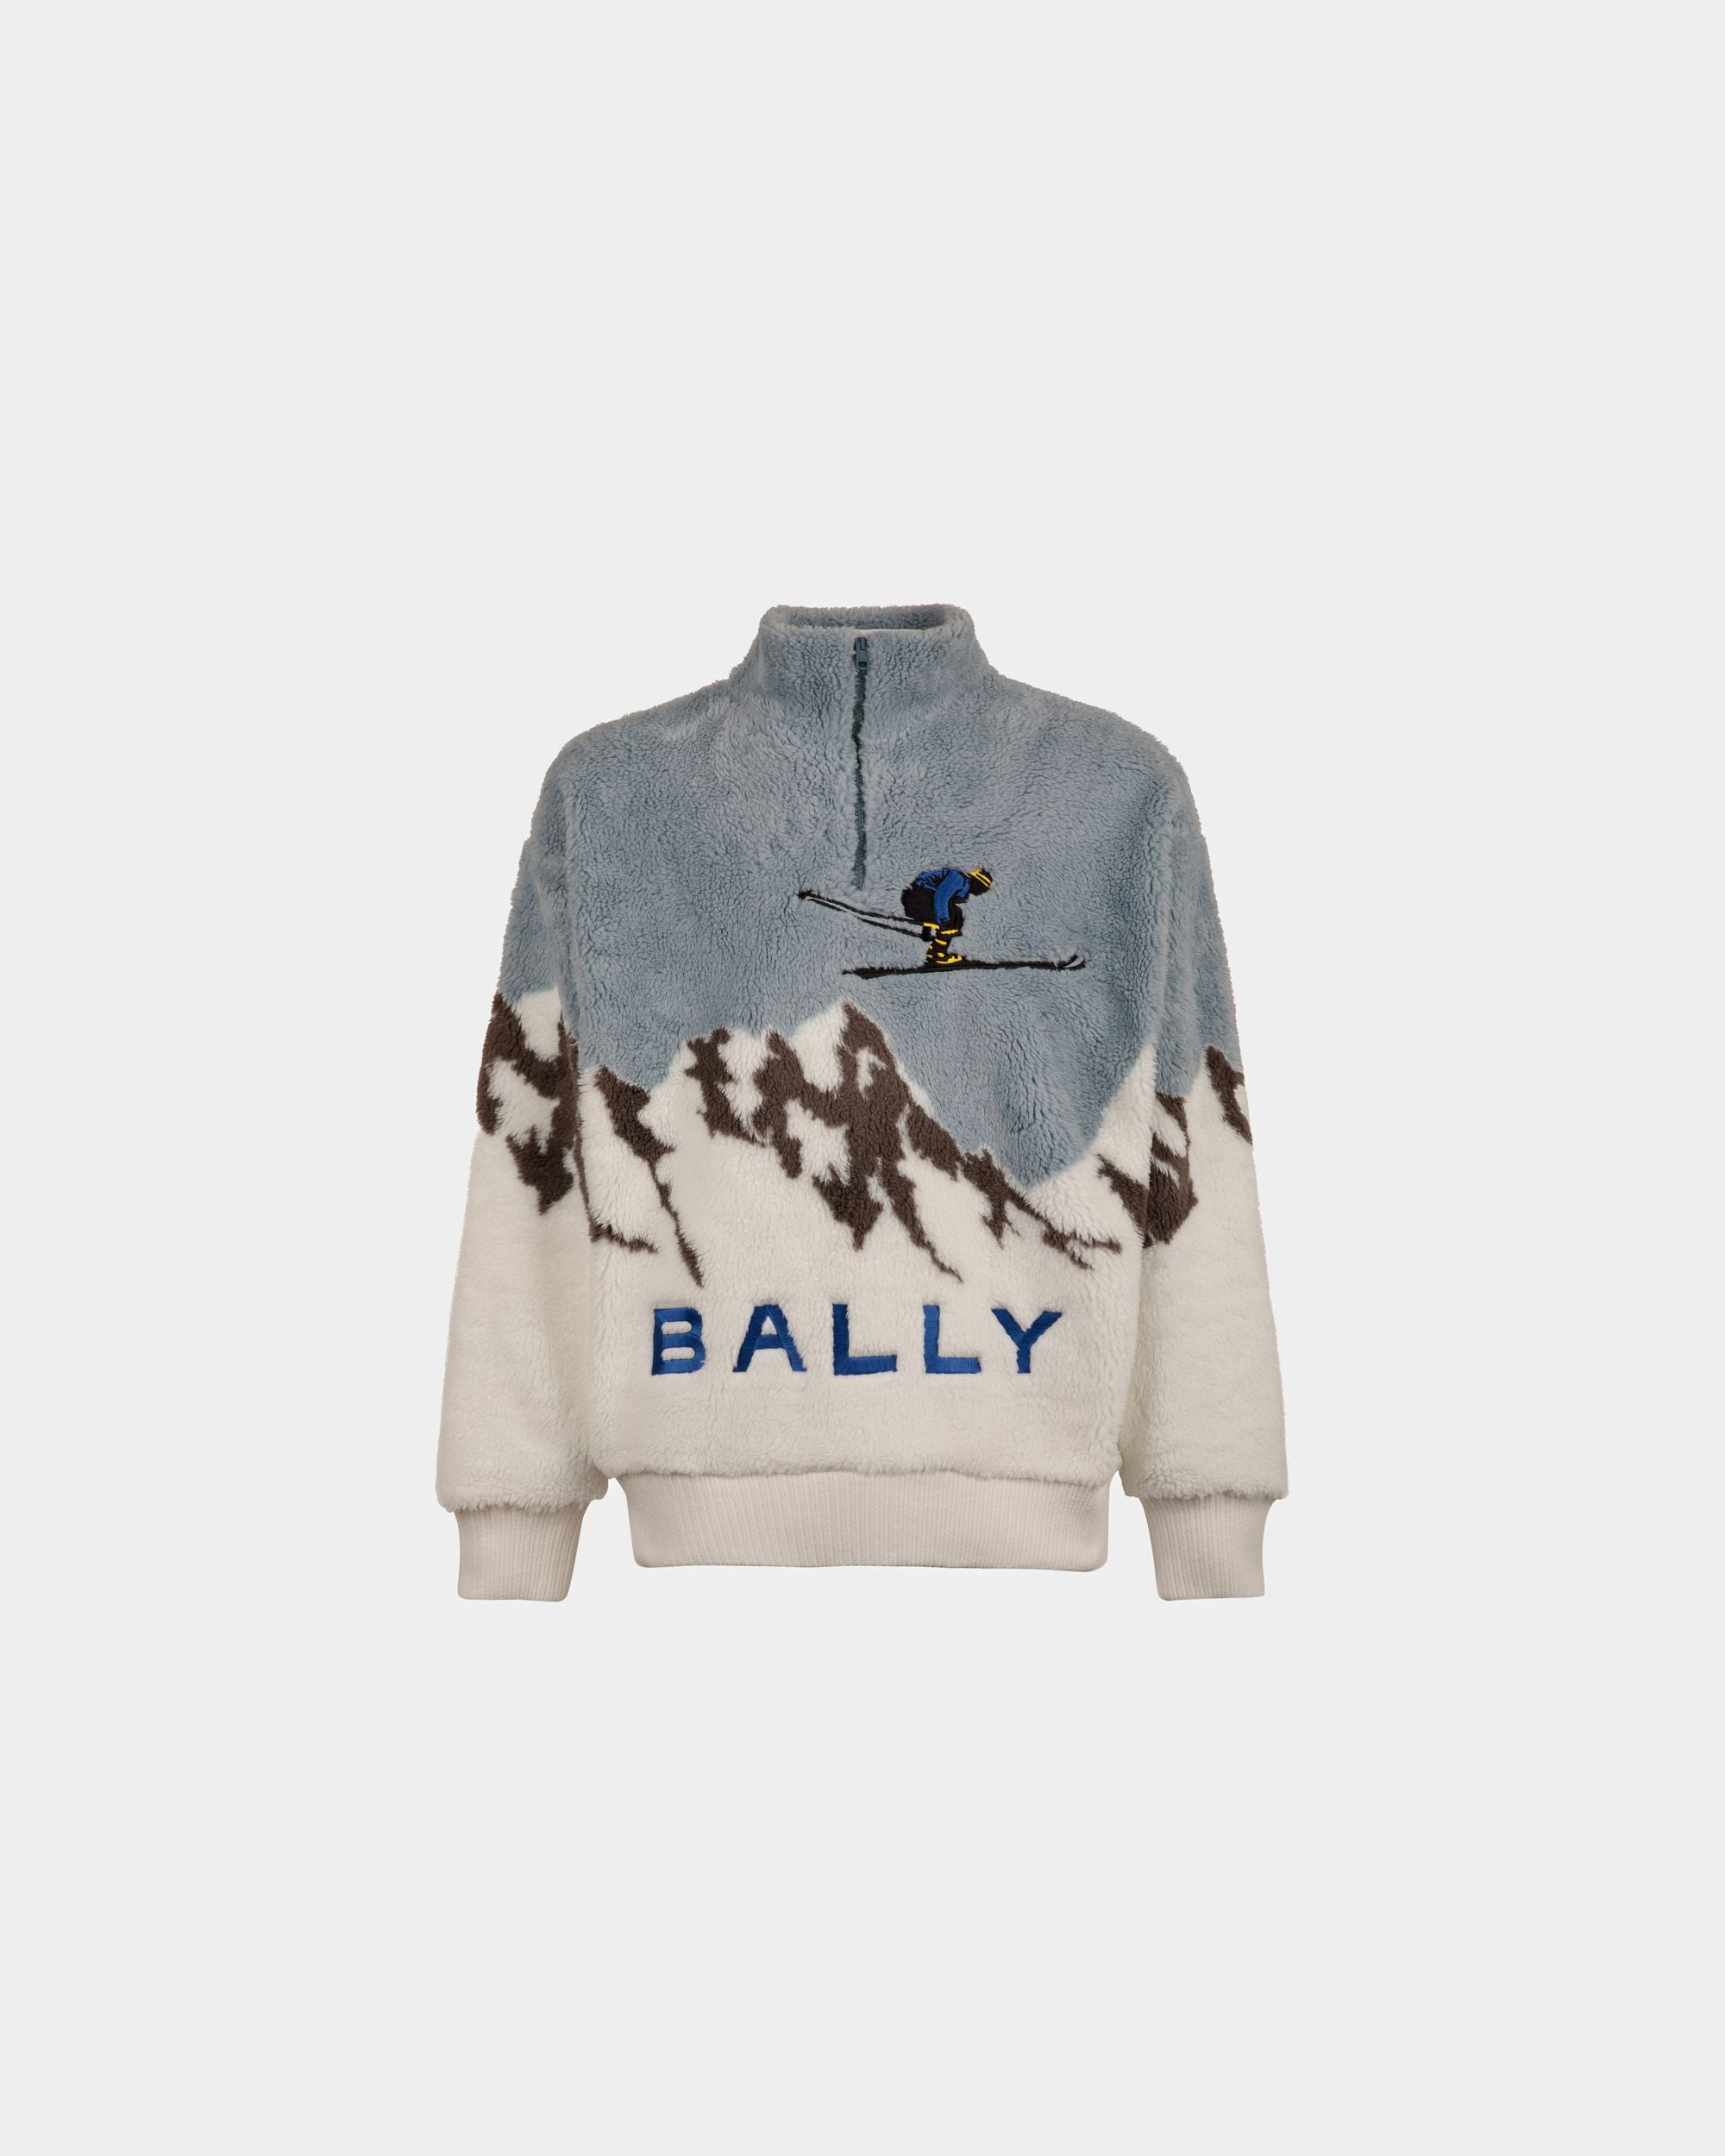 Herren-Sweatshirt aus Sherpa-Fleece in Hellblau und Weiß| Bally | Still Life Vorderseite